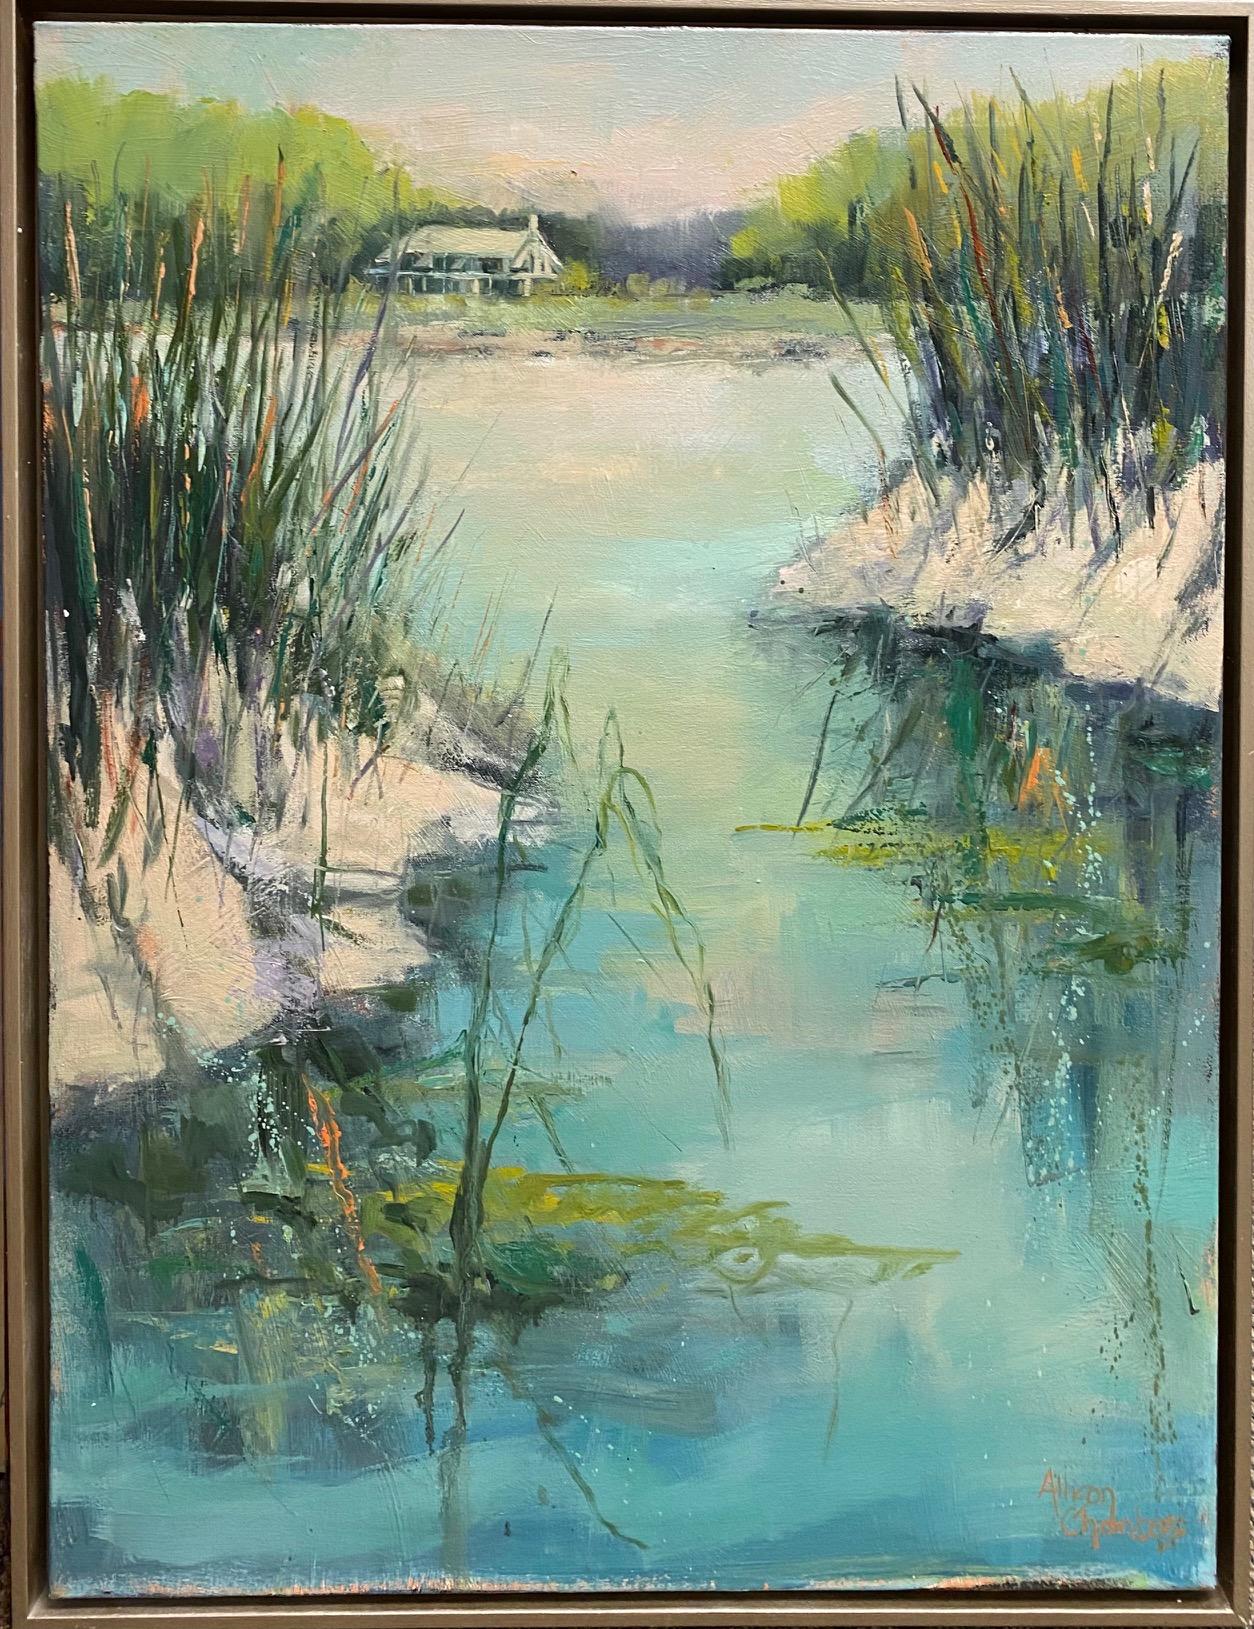 Allison Chambers Abstract Painting – Through the Weeds II, Original 40x30, abstrakte expressionistische Meereslandschaft